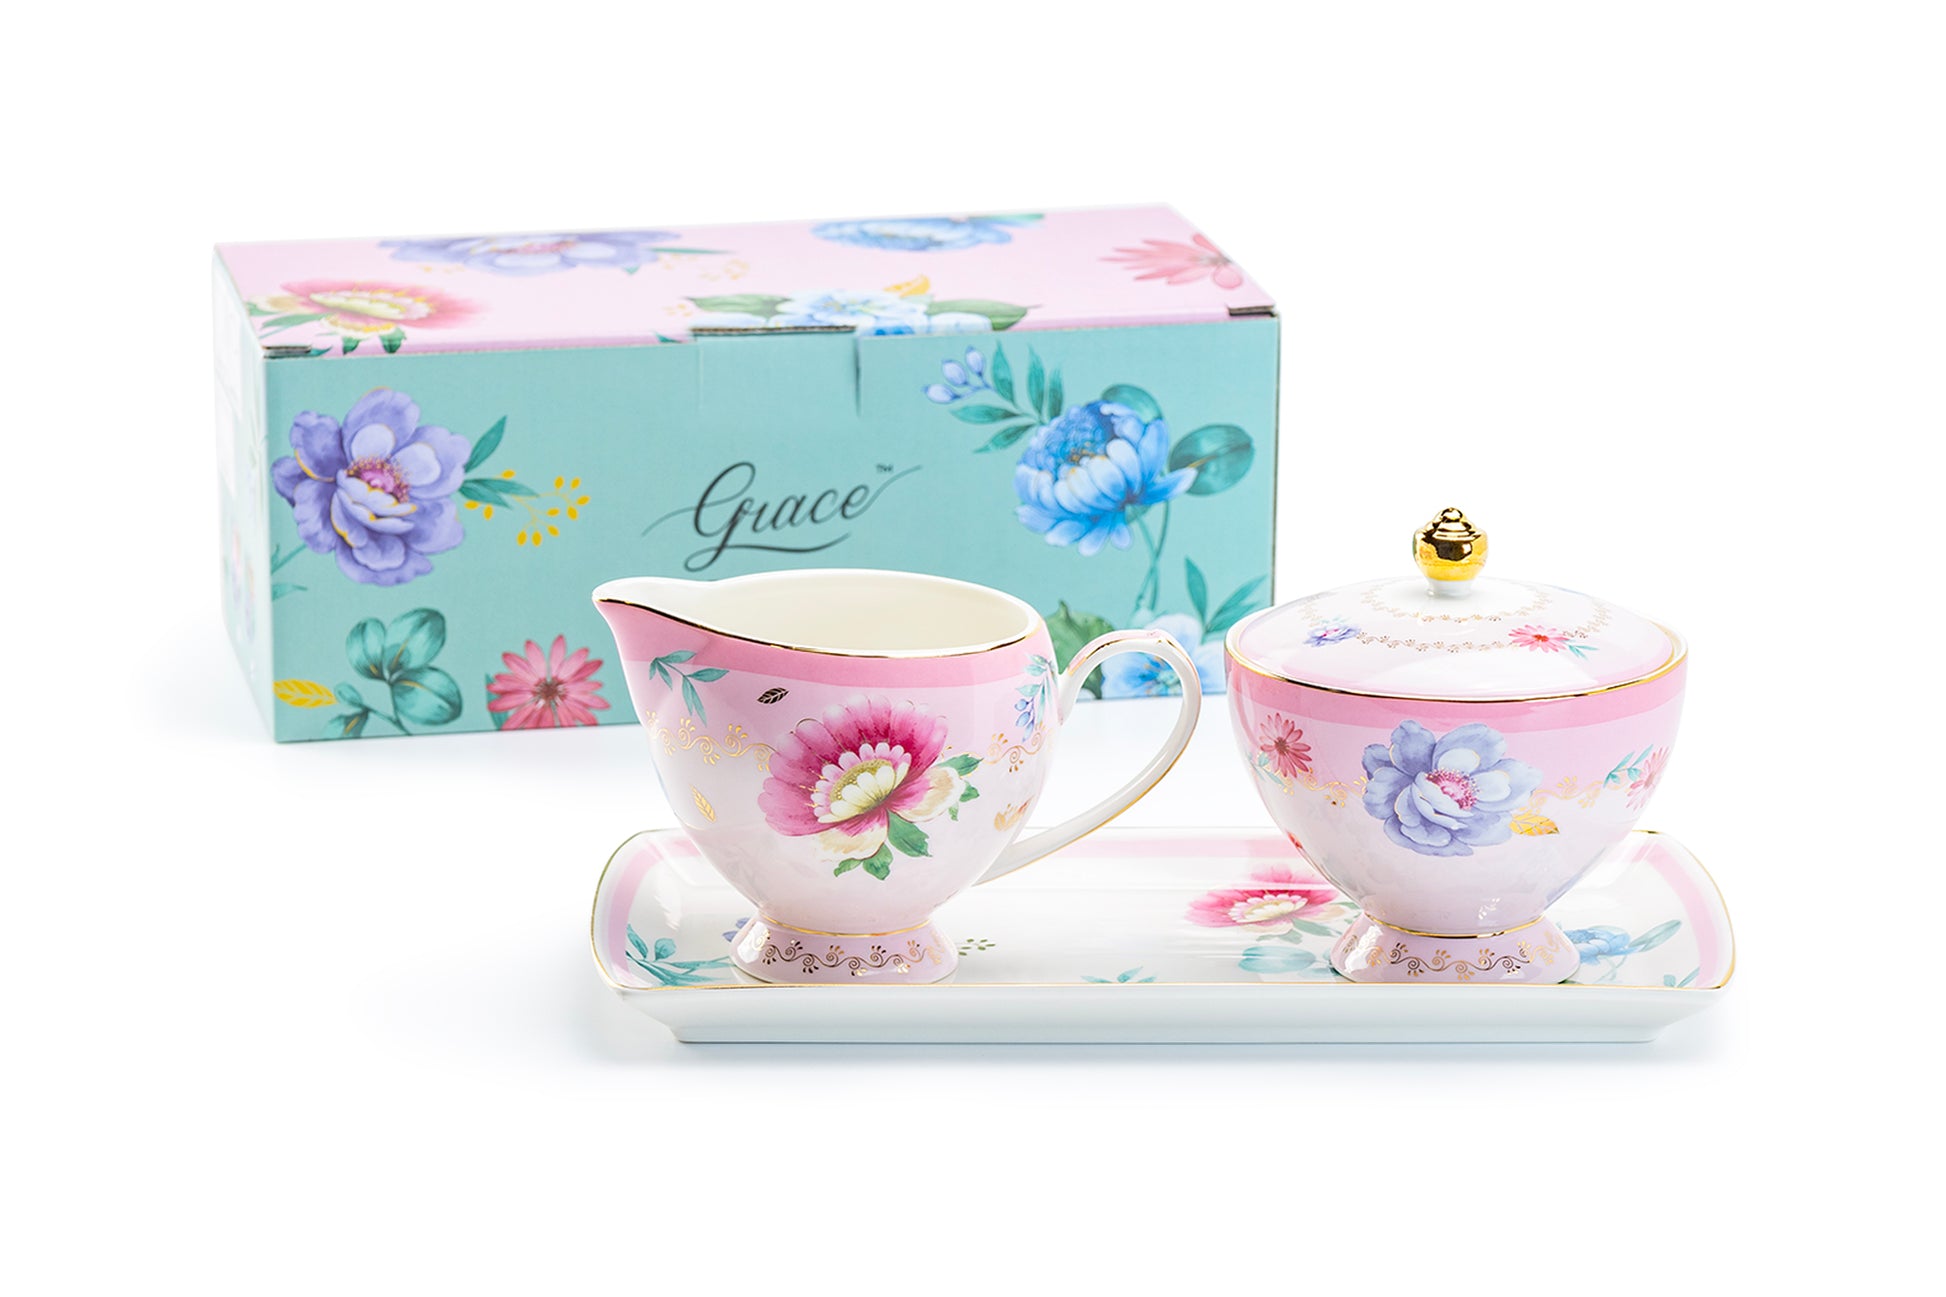 Grace Teaware Gift Boxed Pink Floral Garden Fine Porcelain Sugar Creamer & Serving Tray Set